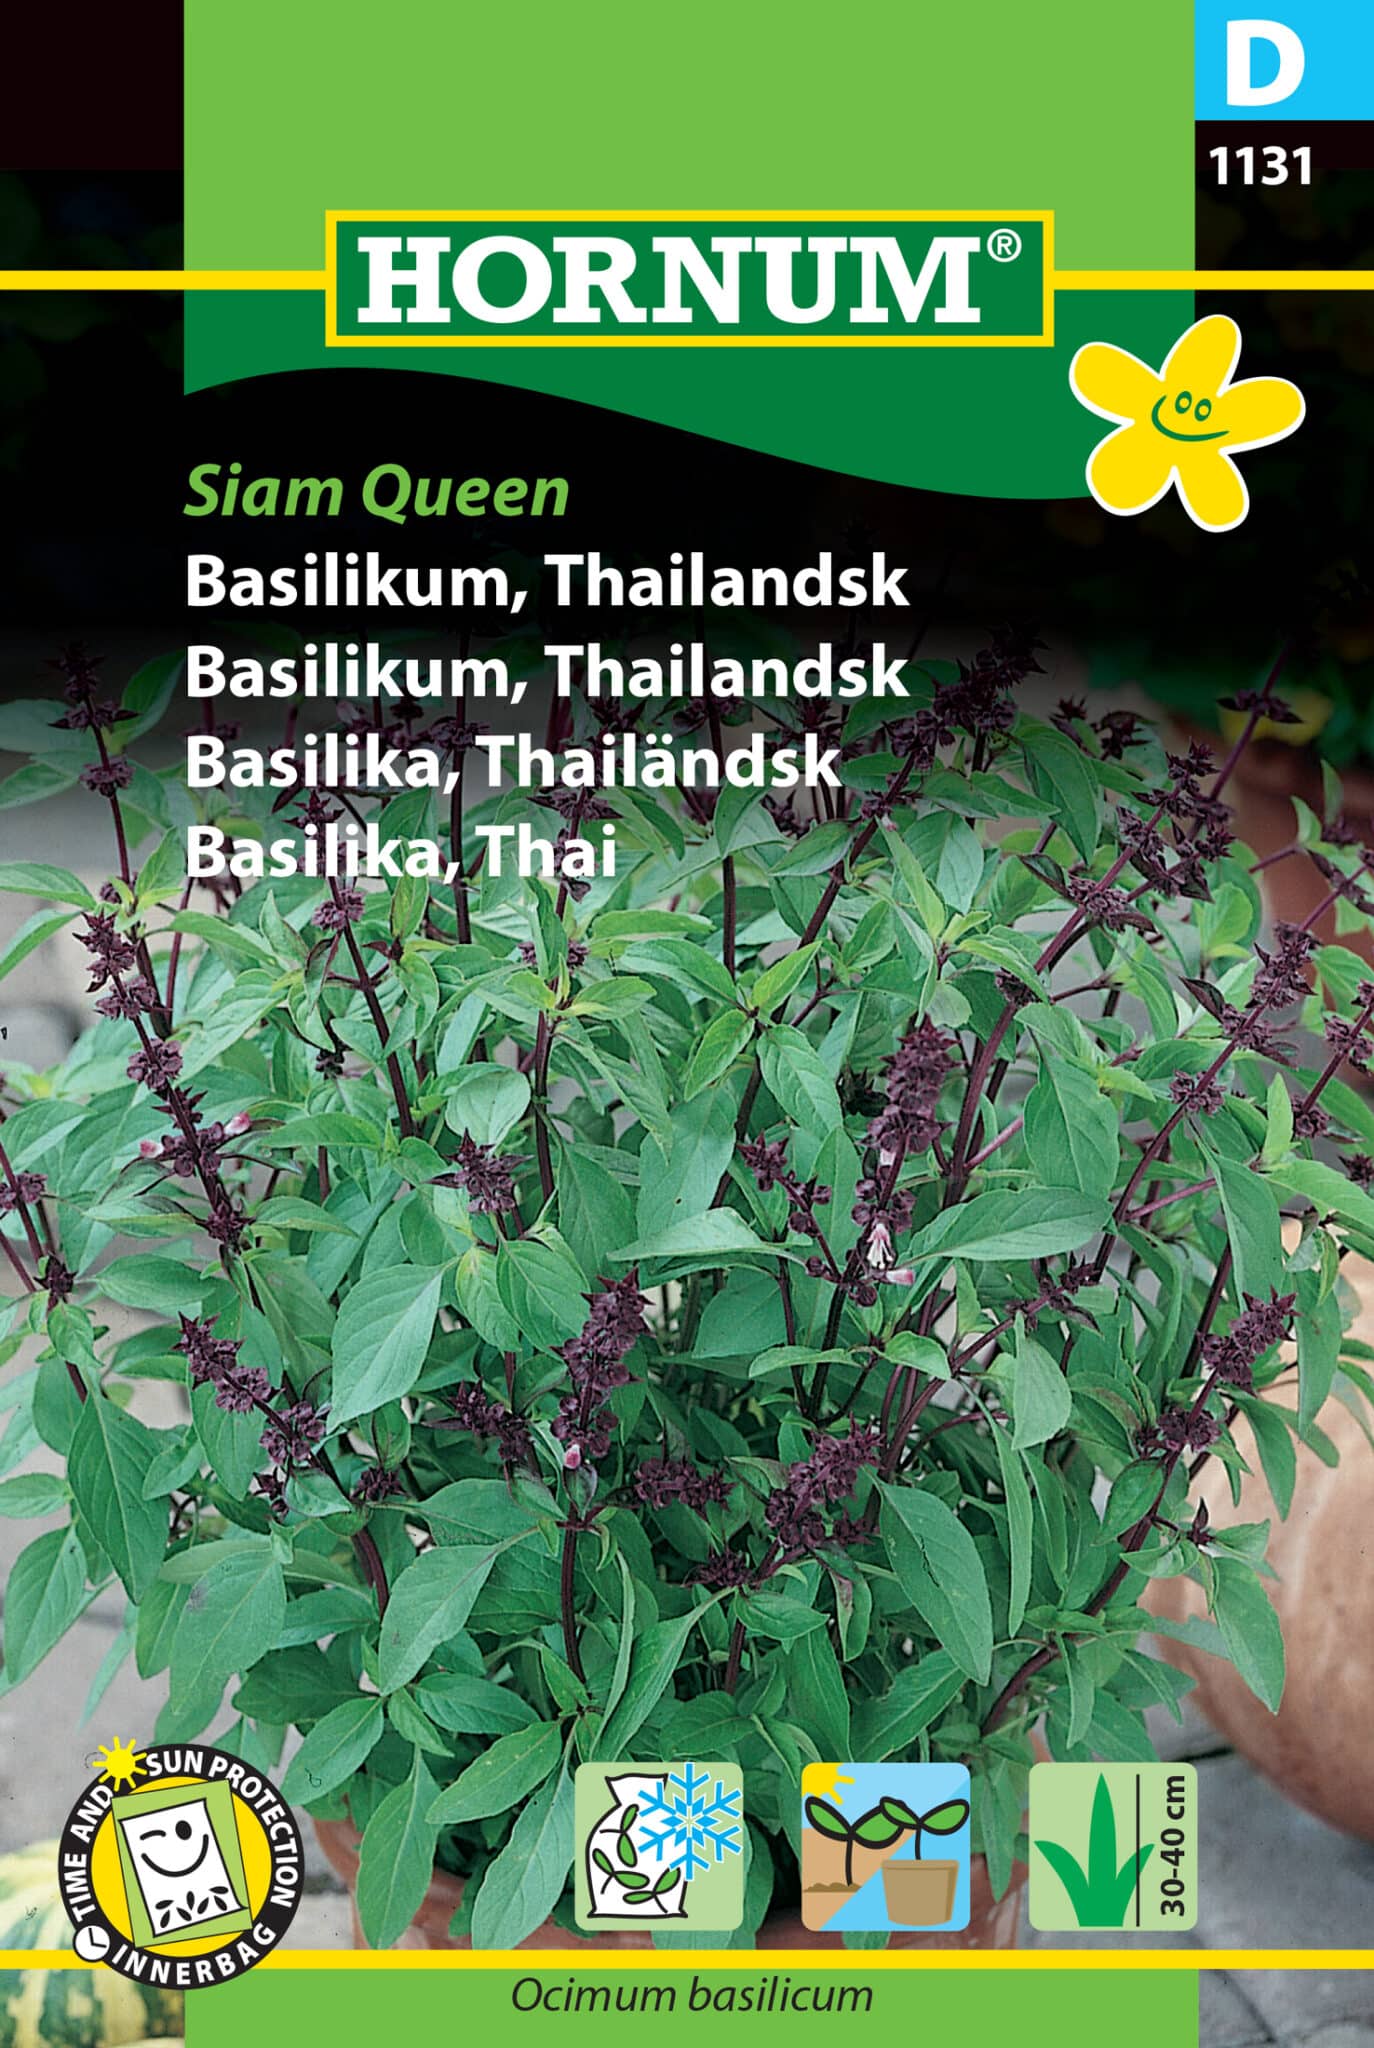 Basilikum Thailandsk 'Siam Queen' Frø